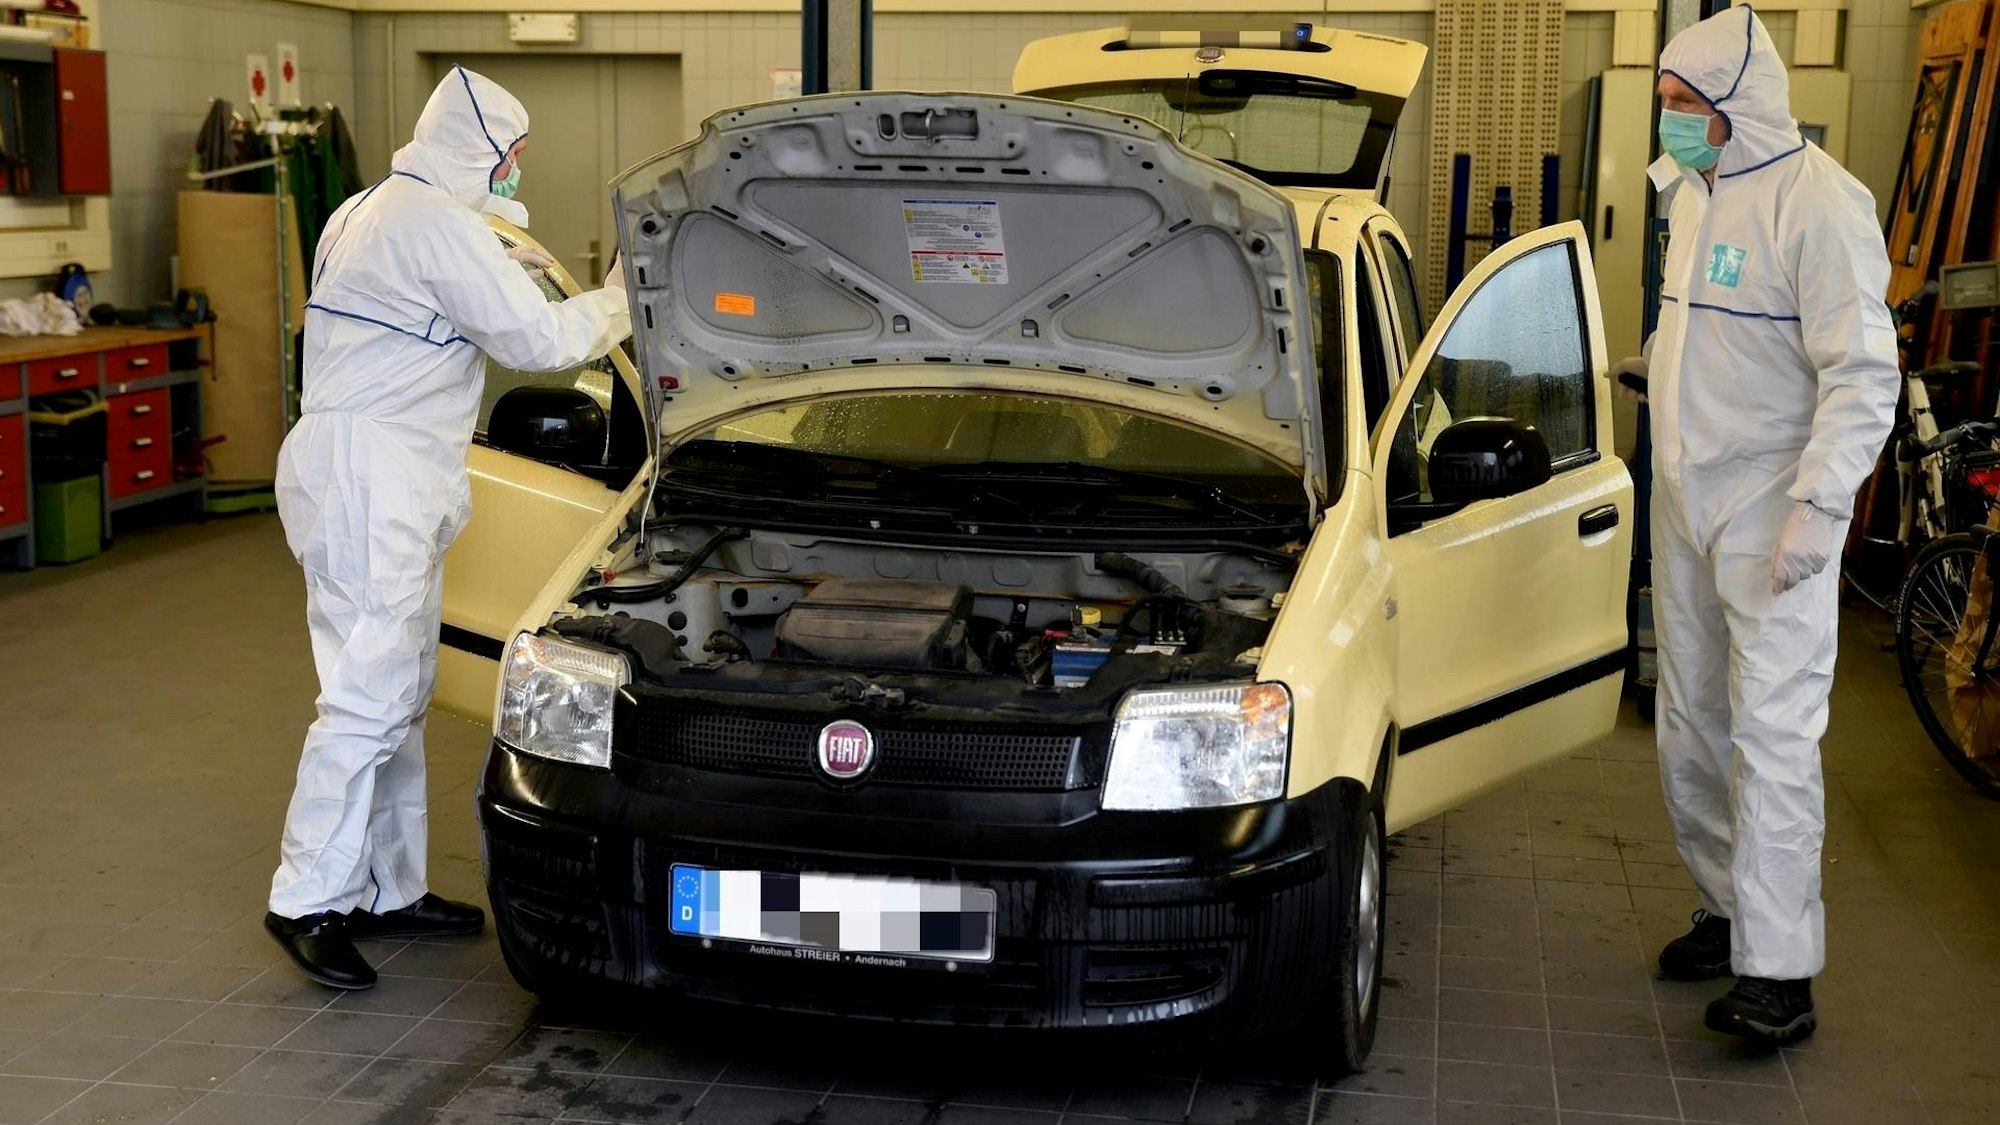 Beamte der Spurensicherung untersuchen den Fiat Panda, in dem eine Frau erschossen wurde.